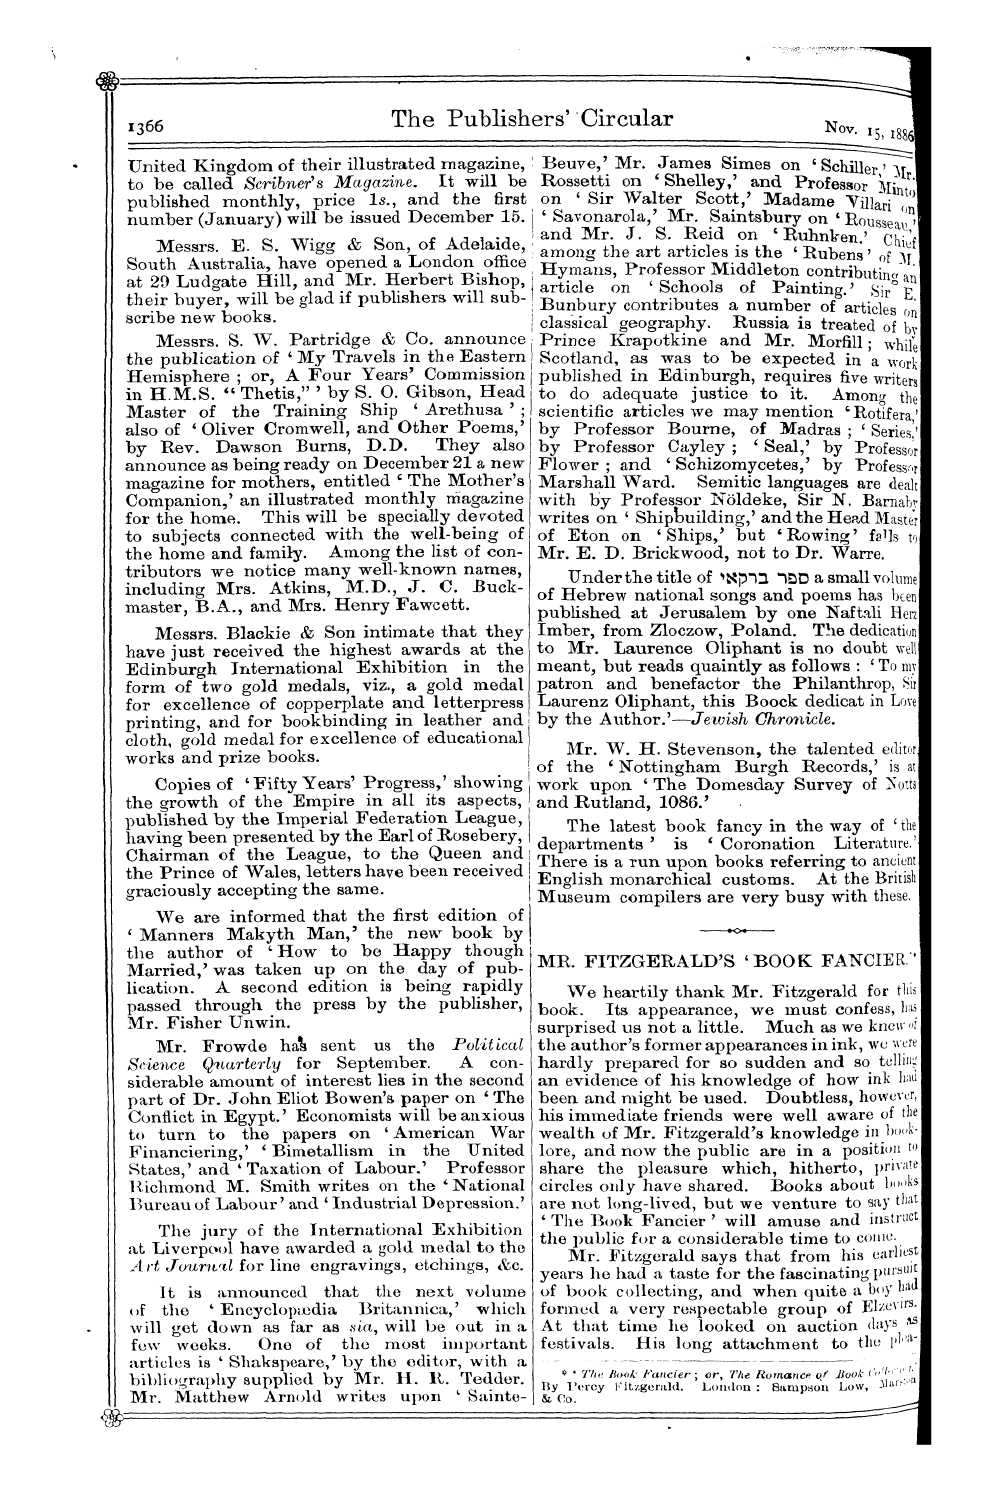 Publishers’ Circular (1880-1890): jS F Y, 1st edition - Ar00800